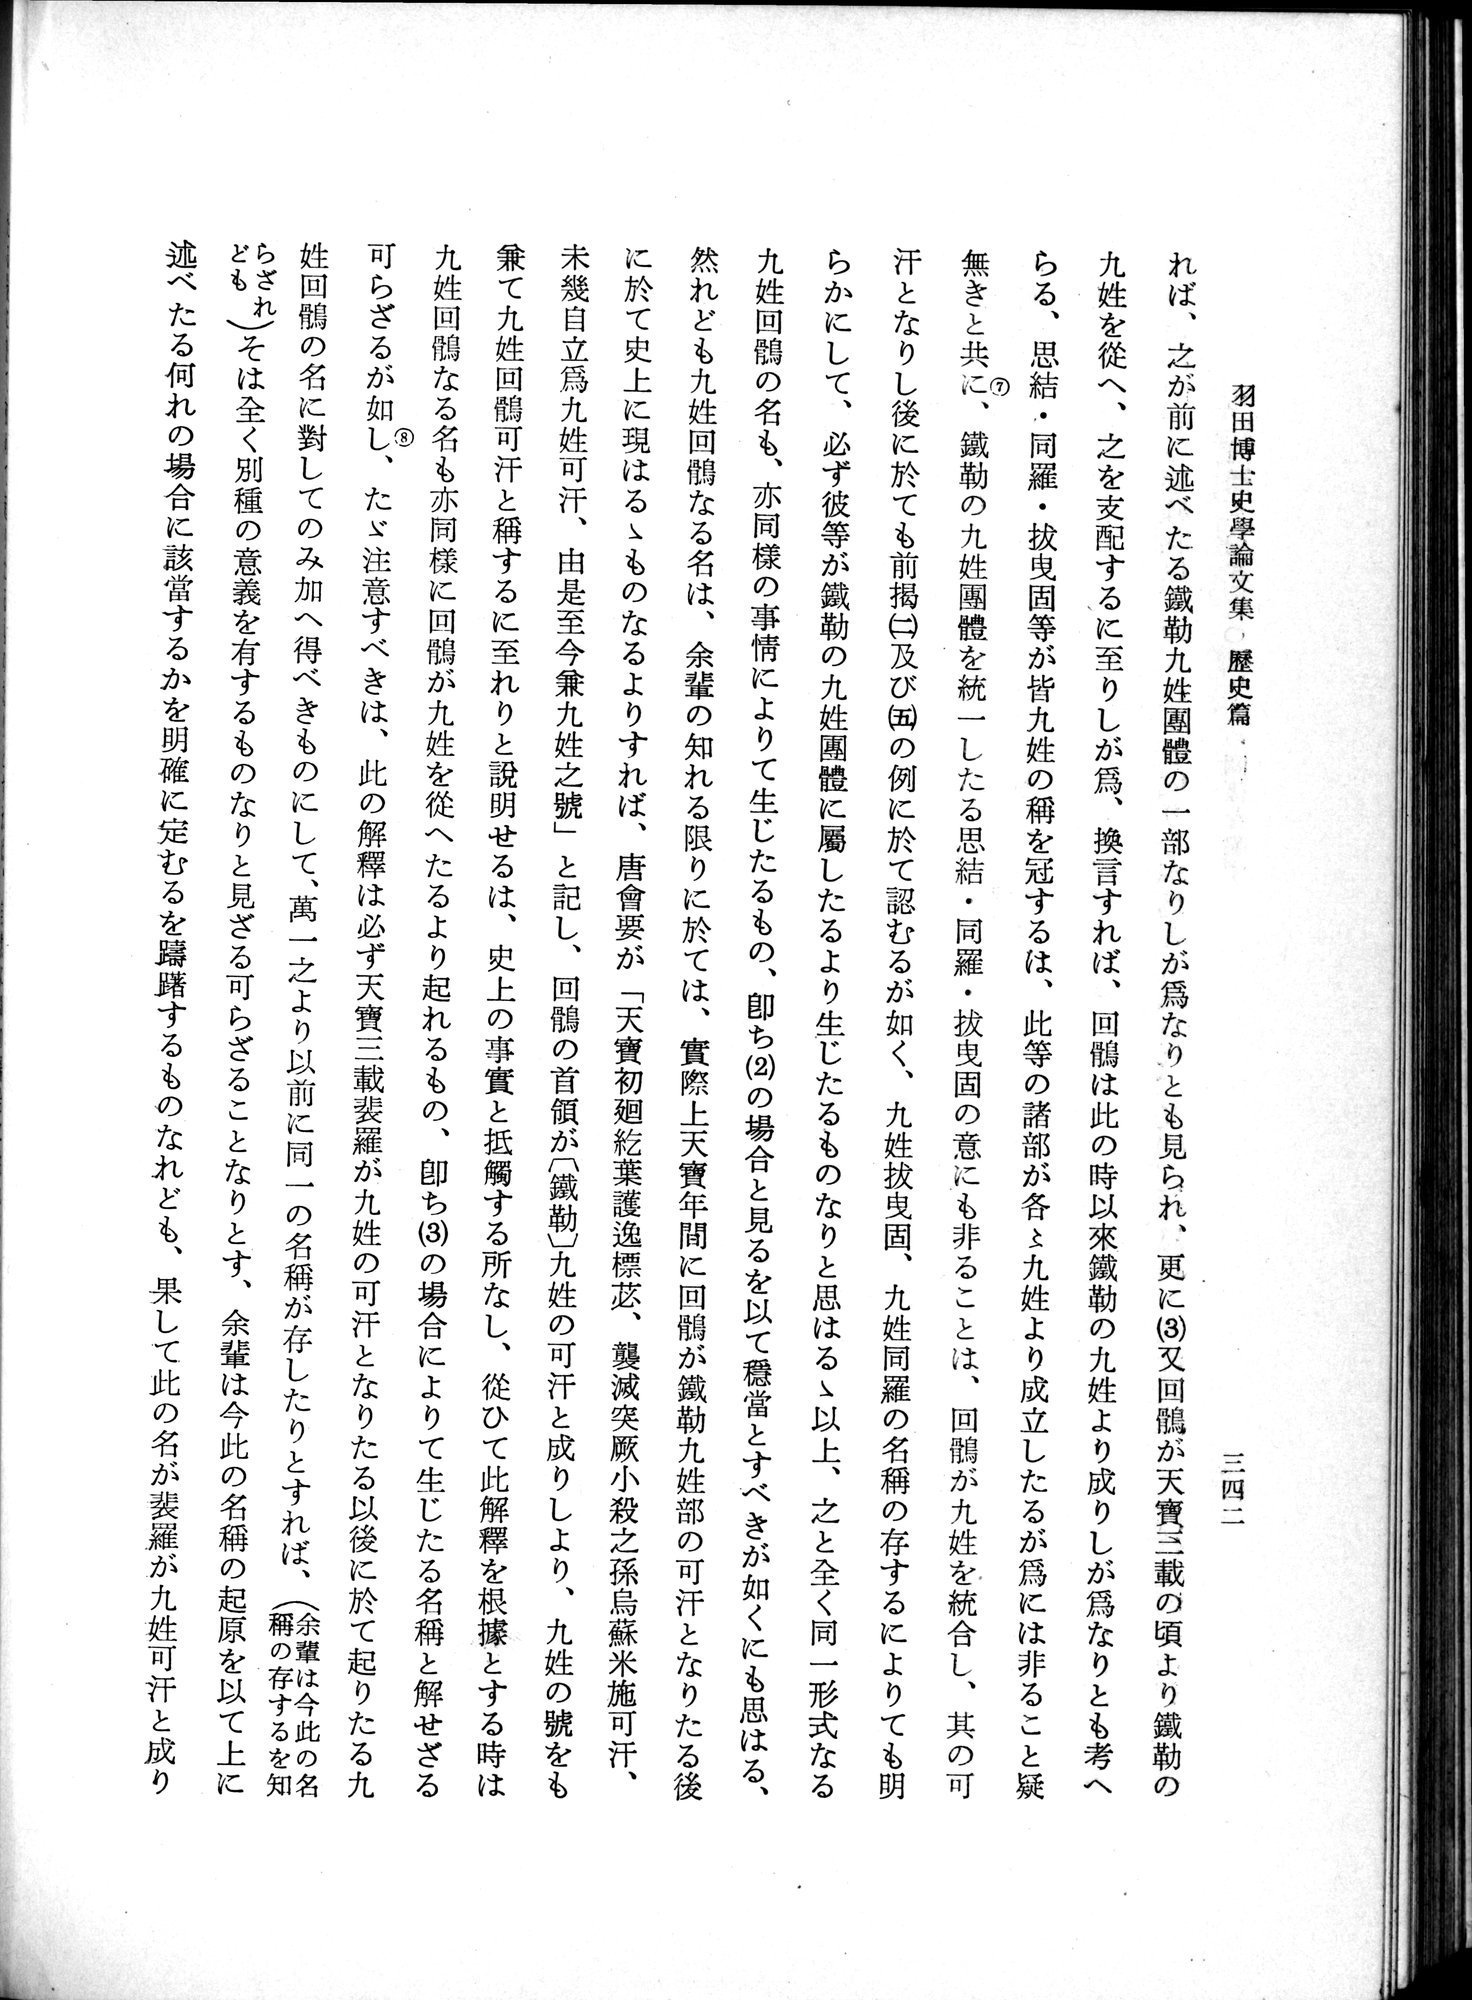 羽田博士史学論文集 : vol.1 / Page 380 (Grayscale High Resolution Image)